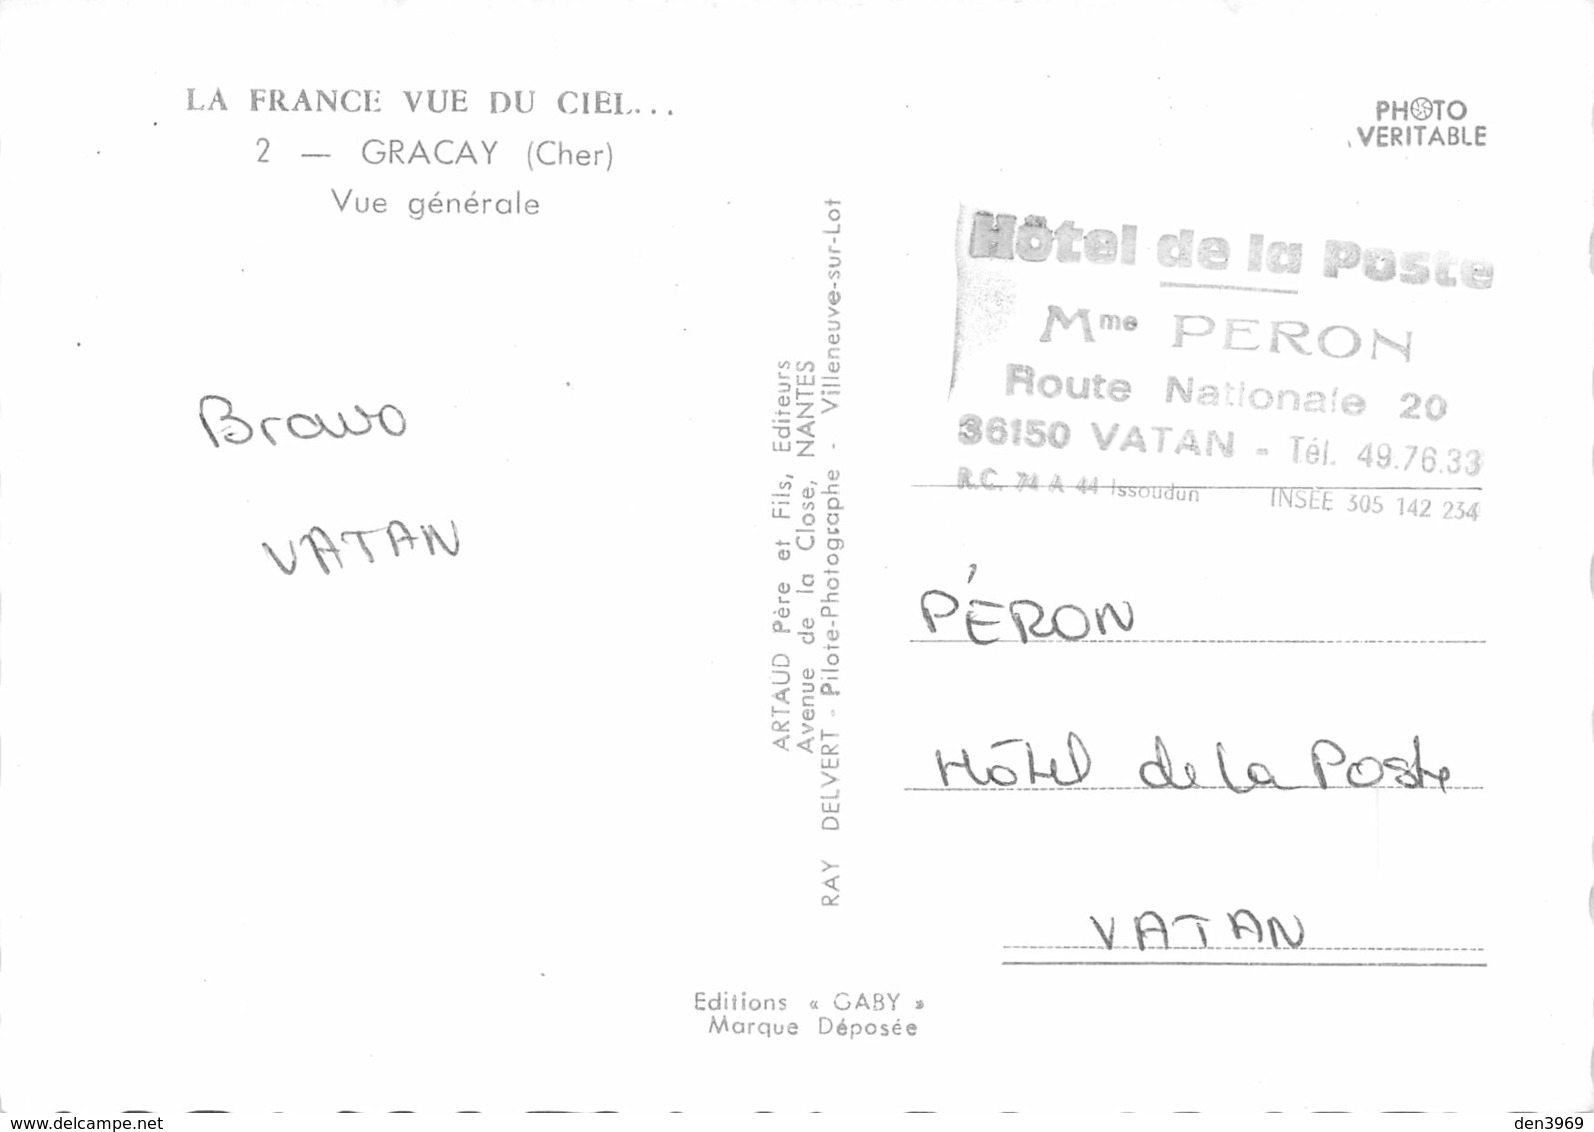 GRACAY - Vue Générale - Tampon Hôtel De La Poste, Mme Peron, Vatan - Graçay